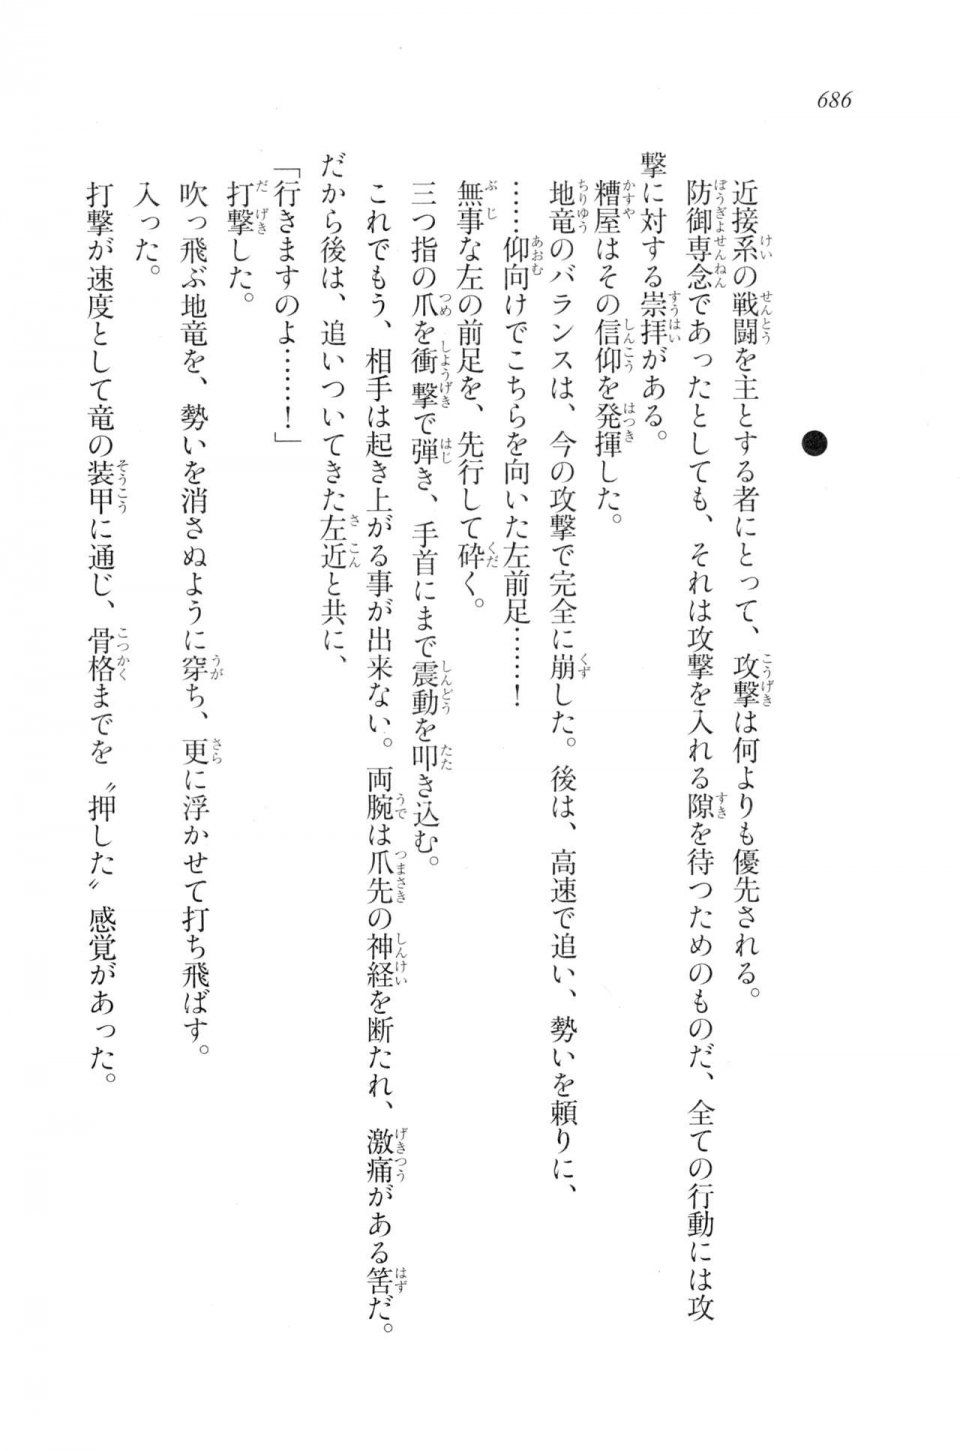 Kyoukai Senjou no Horizon LN Vol 20(8B) - Photo #686